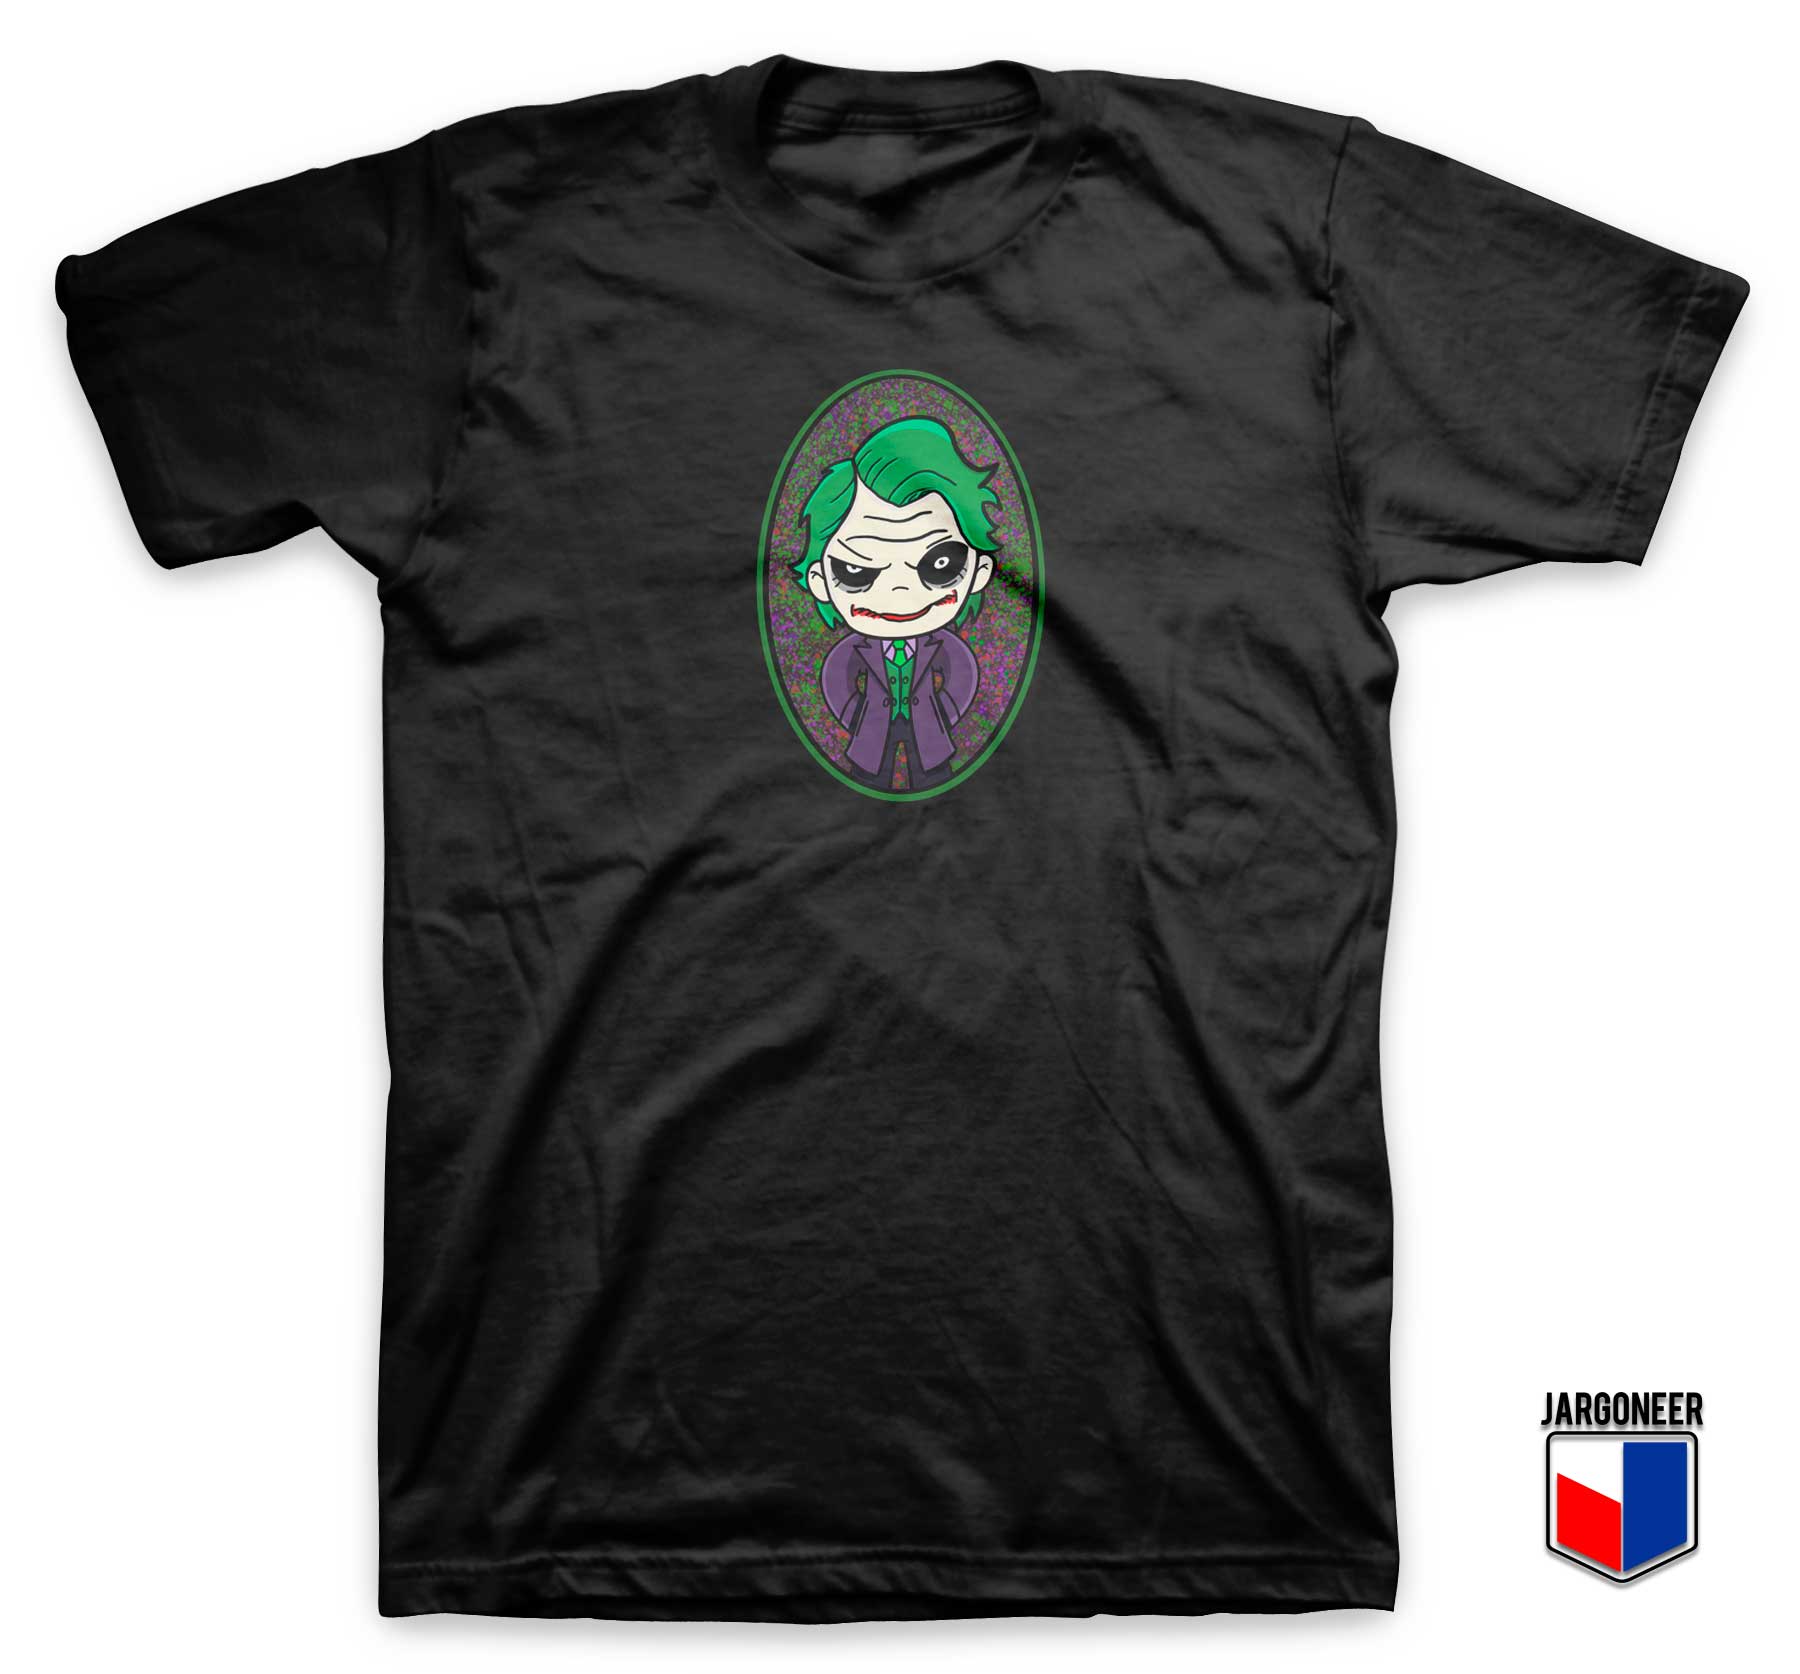 Chibi Joker T Shirt - Shop Unique Graphic Cool Shirt Designs